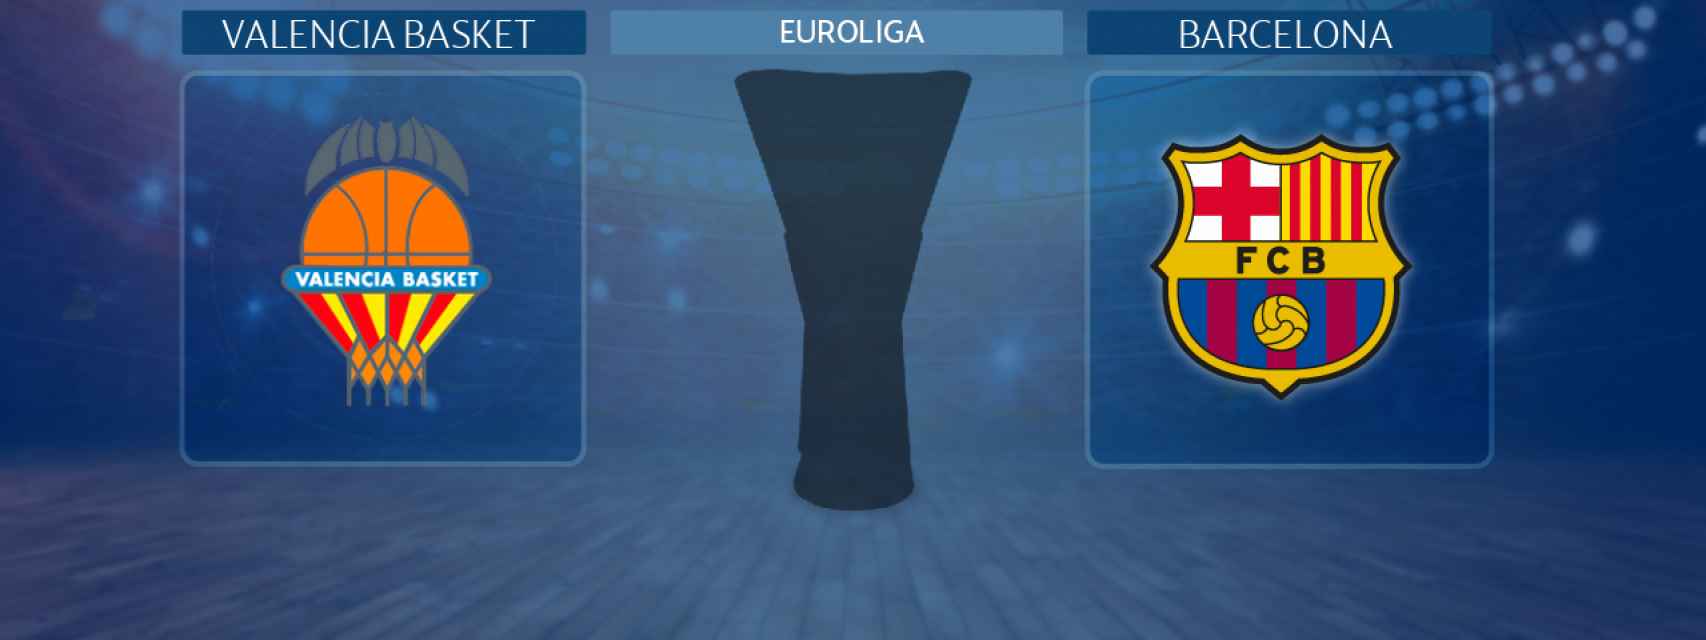 Valencia Basket - Barcelona, partido de la Euroliga